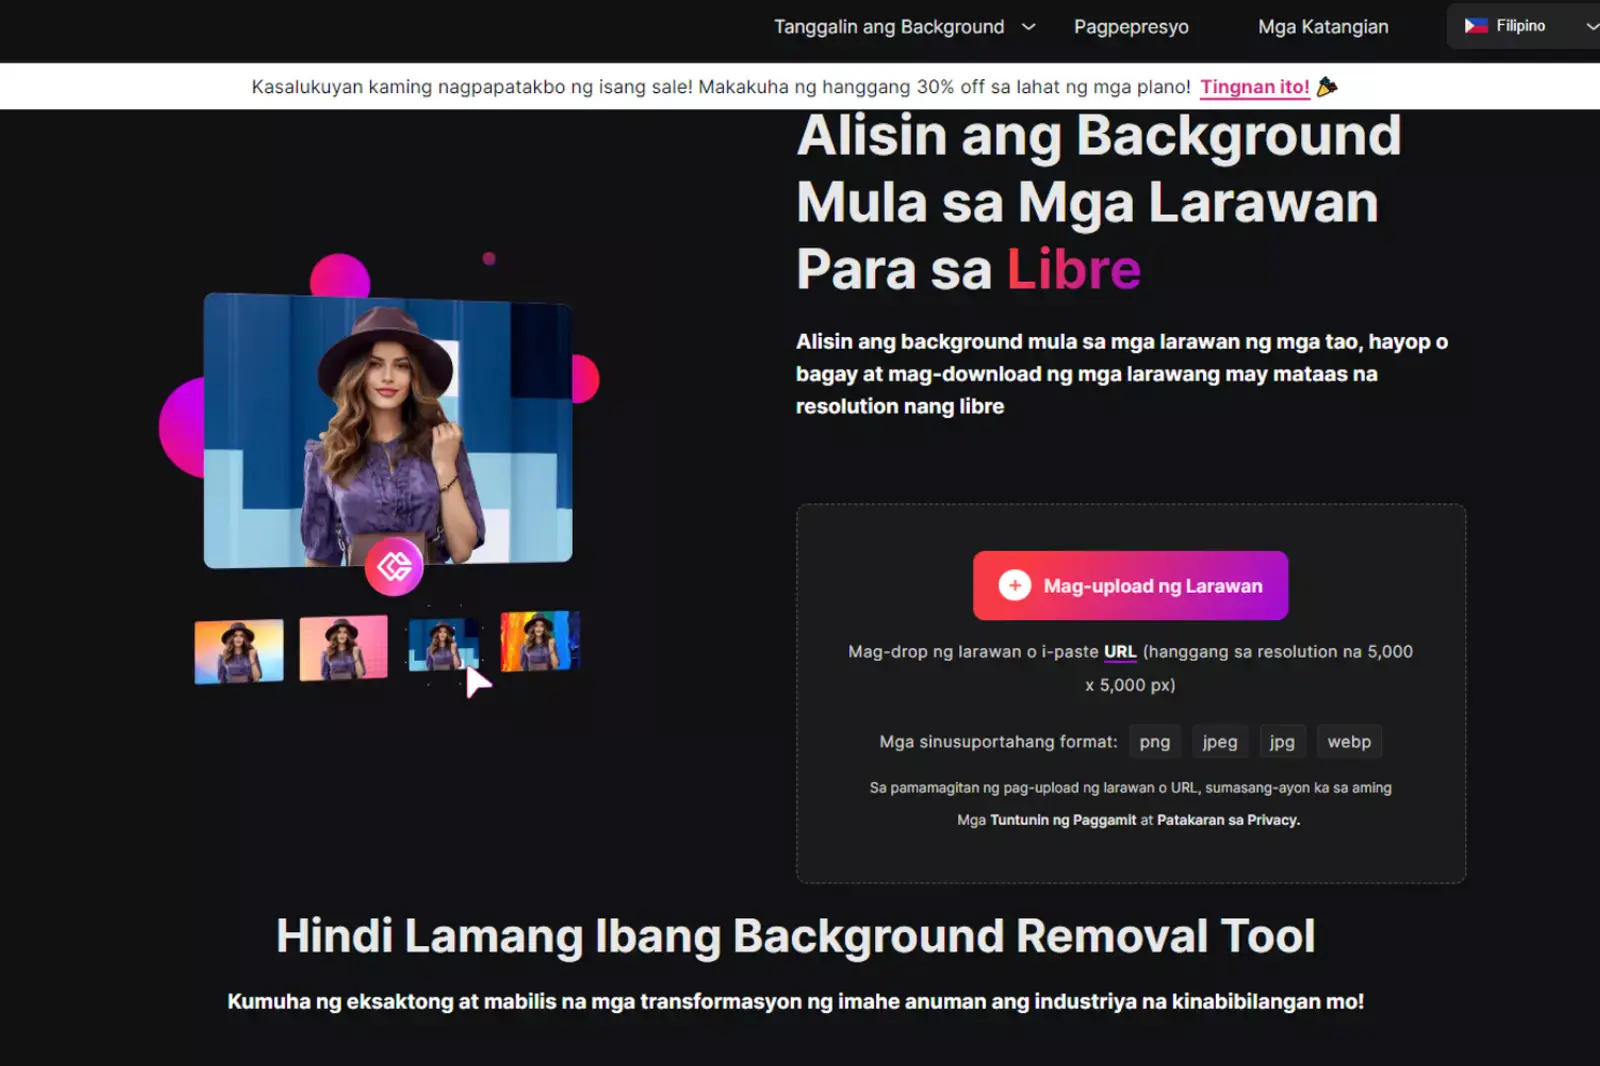 dialogue box na nagsasabing "Mag-upload ng Larawan" 